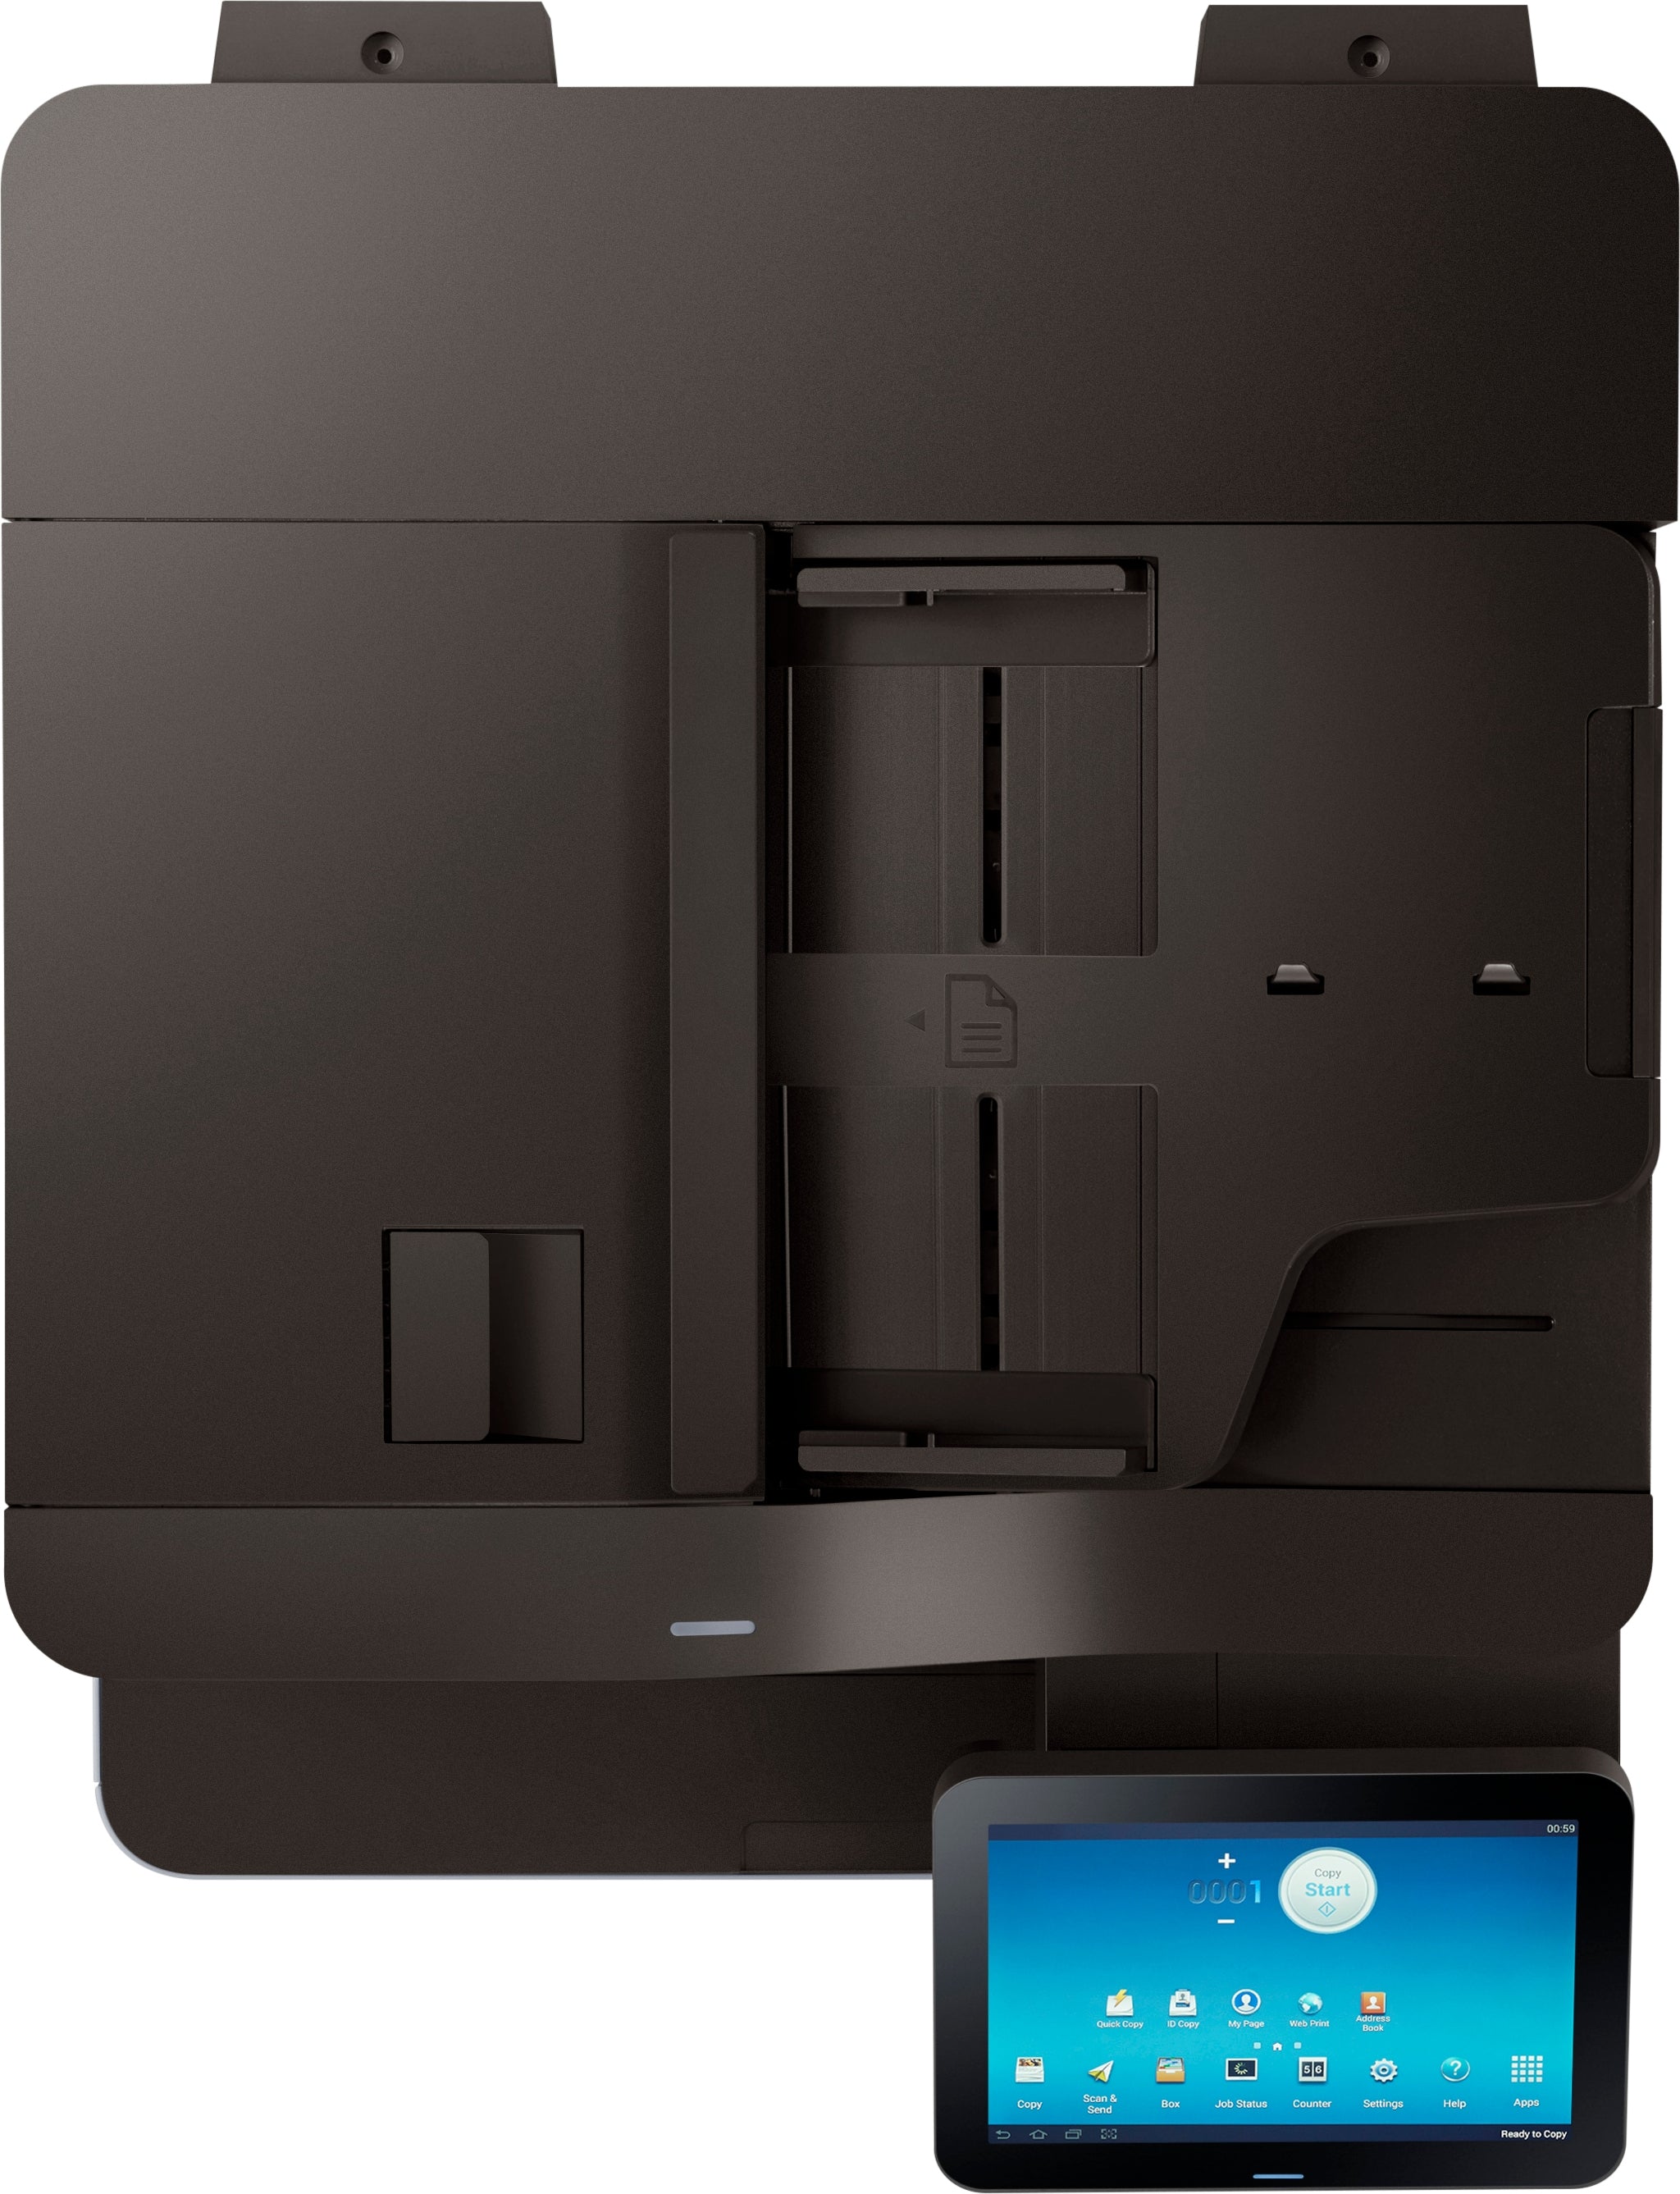 Samsung SLK7600GX/XAA Multixpress Laser Multifunction Printer